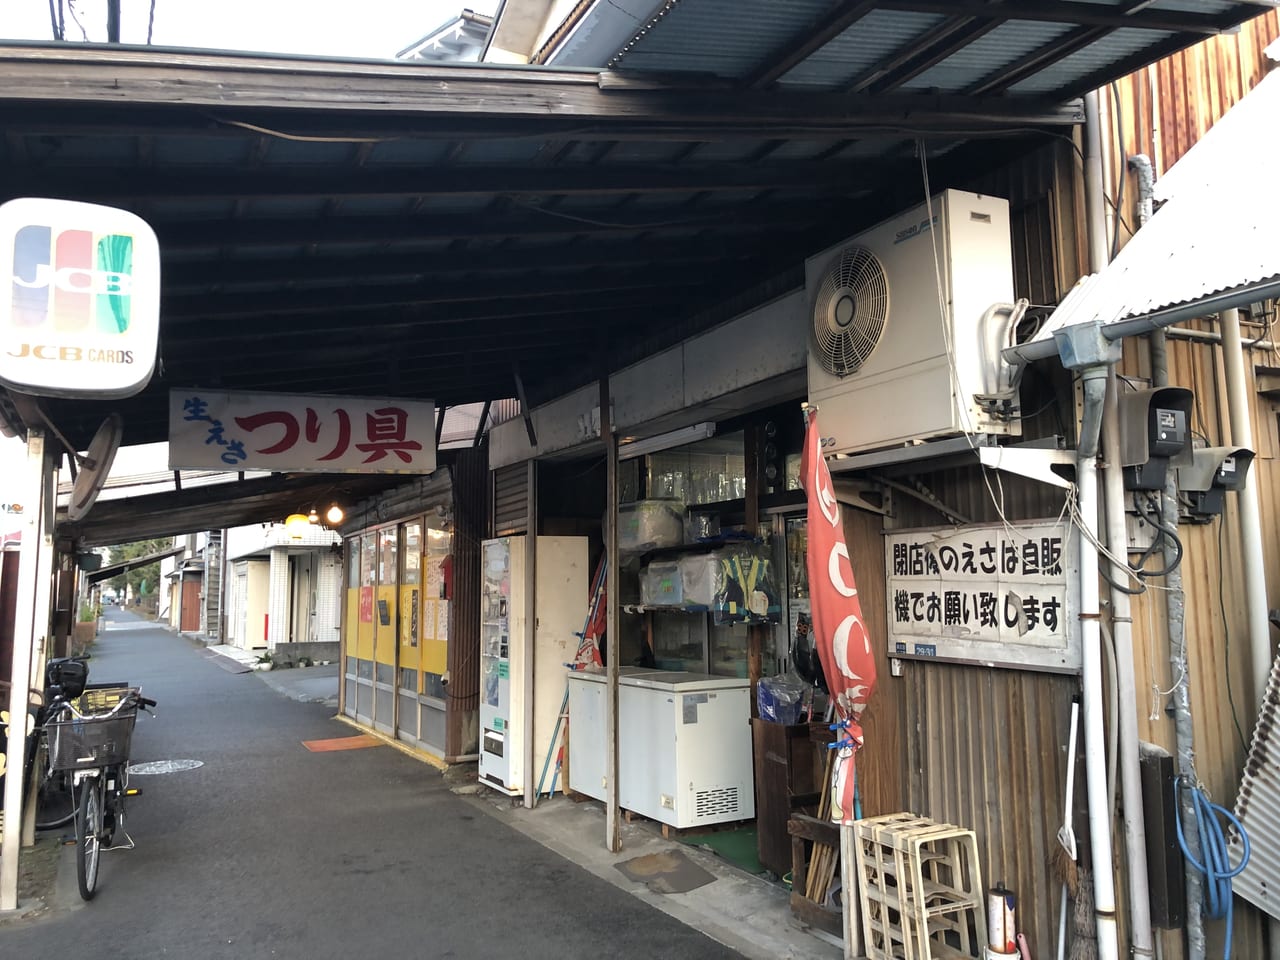 横浜市南区 町中に釣り餌の自動販売機 釣りがしたくなったら いぶき釣具店はいかがでしょうか 号外net 横浜市南区